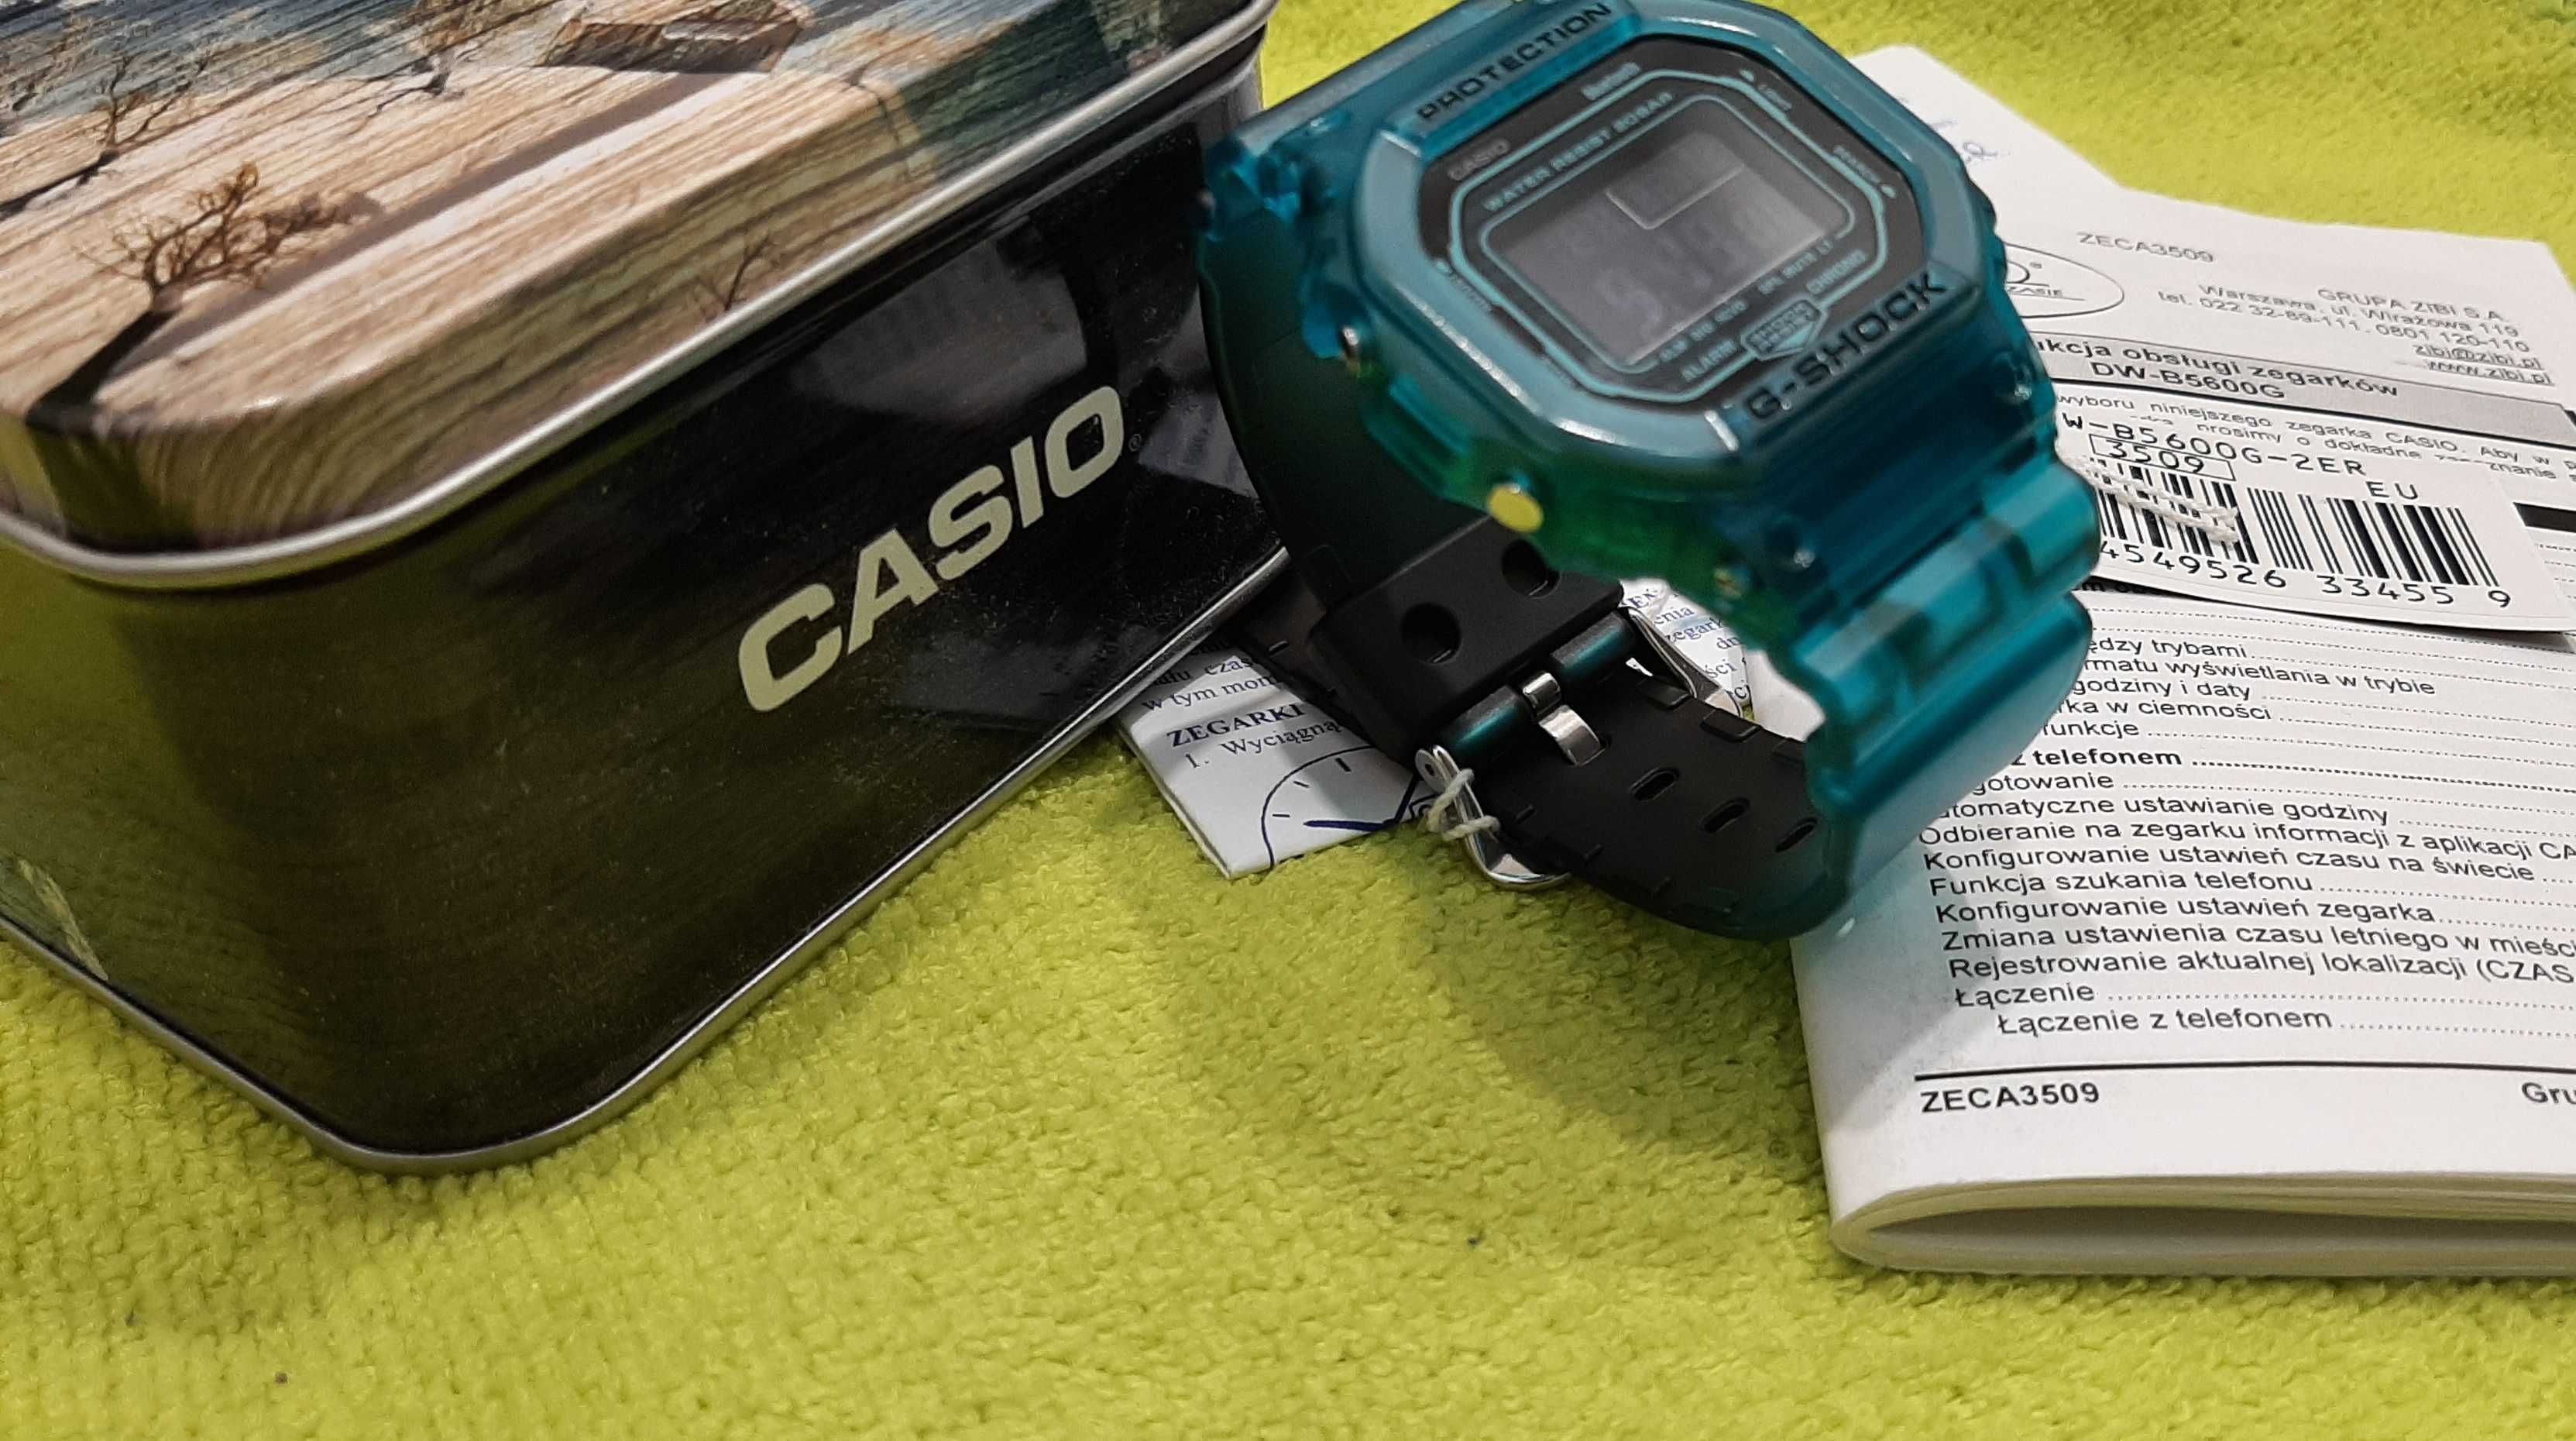 Casio G-Shock DW-B5600G-2ER,bluetooth,nowka,gwara.